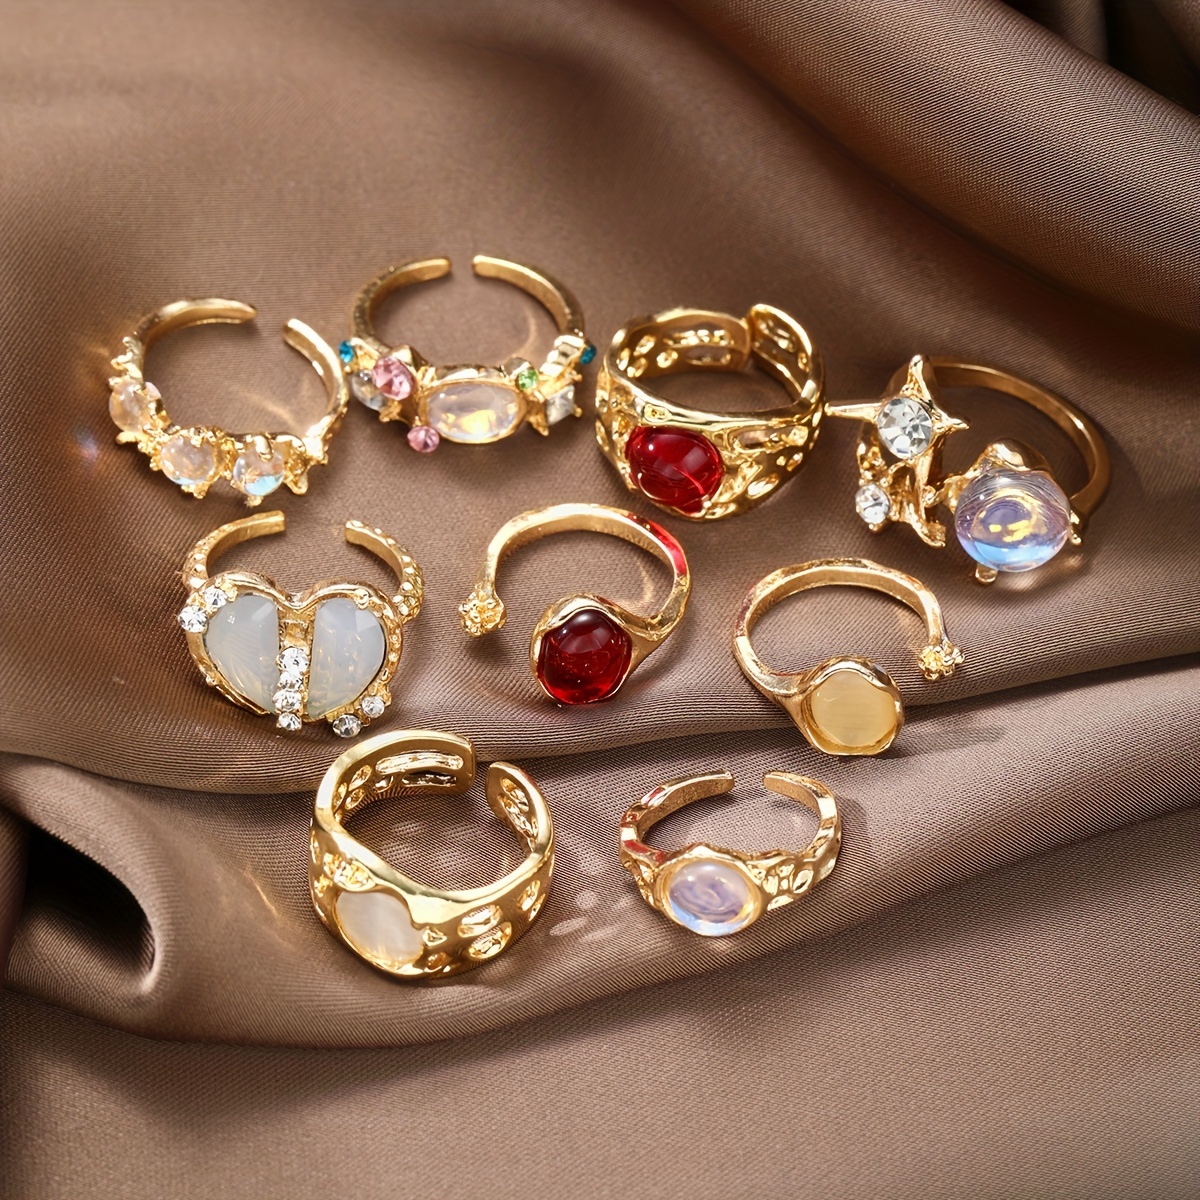 

9pc Inlaid Shiny Rhinestone Open Ring Set Adjustable Finger Ring Jewelry Decoration Zinc Alloy